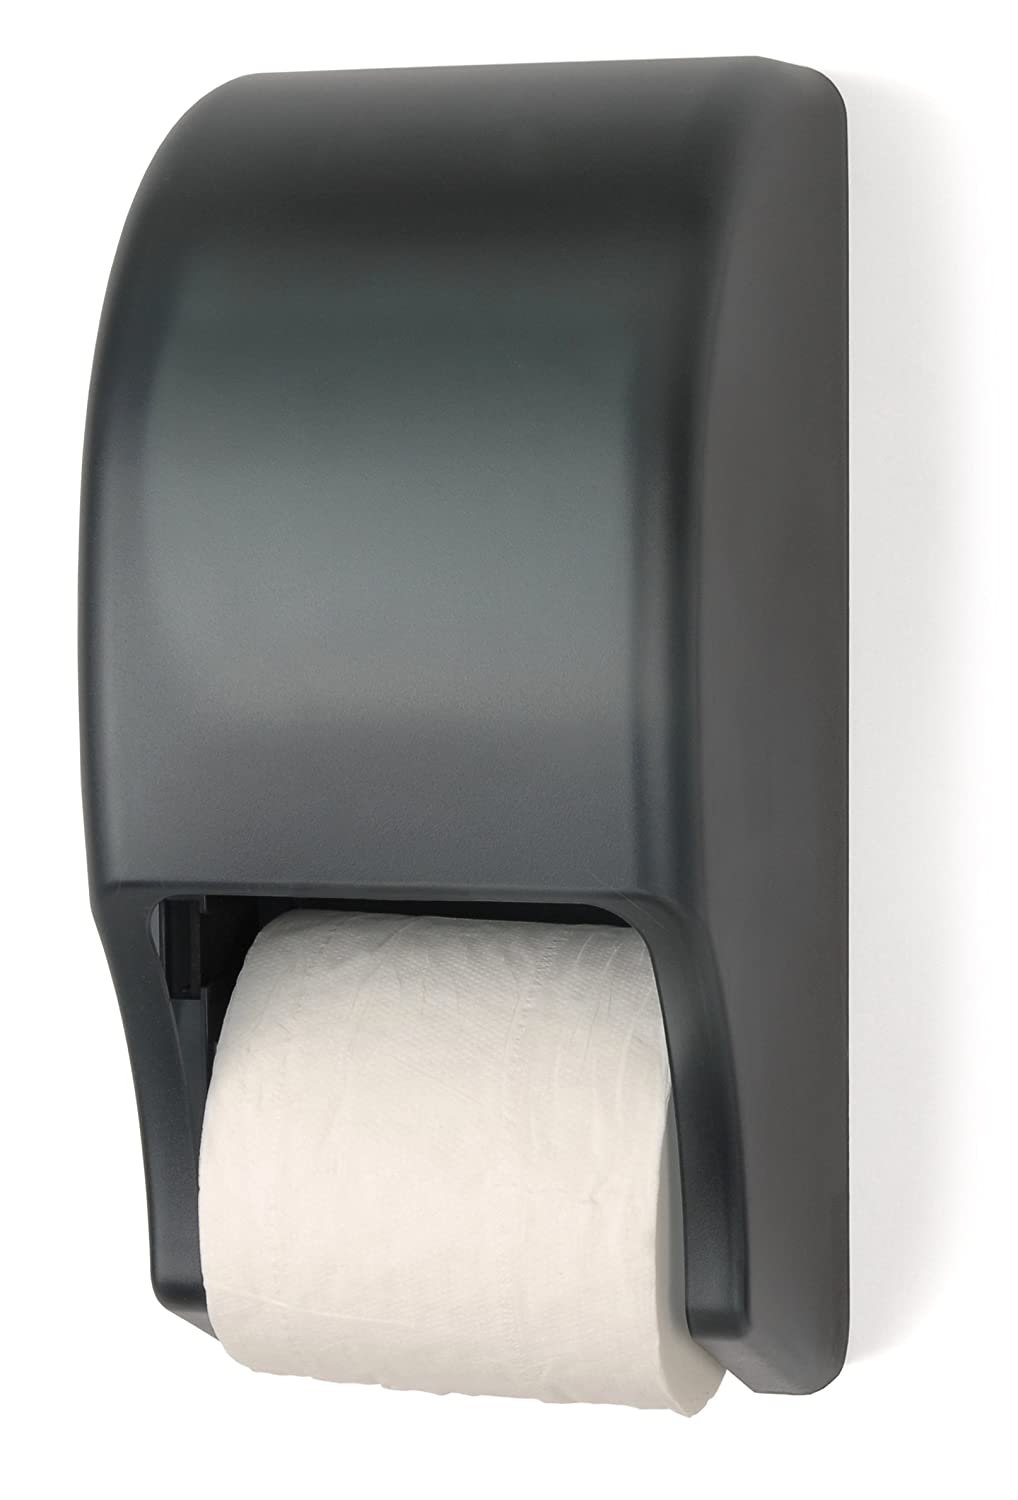 Nittany Paper Standard Bath Tissue Dispenser (NP-RD0028-01)